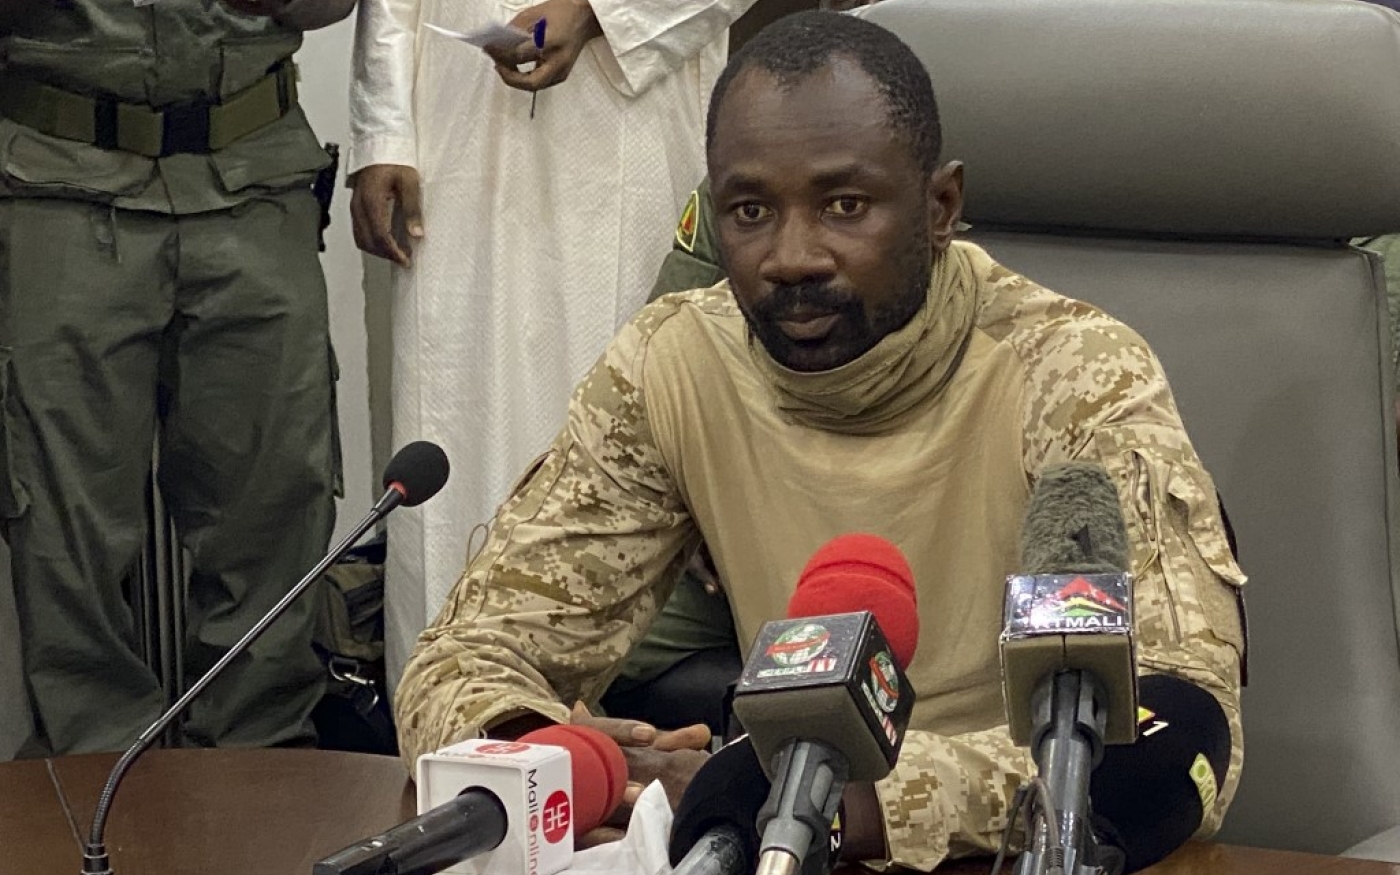 Le colonel Assimi Goïta, le 19 août 2020 à Bamako, après le coup d’État qui a renversé Ibrahim Boubakar Keïta (AFP/Malik Konate)